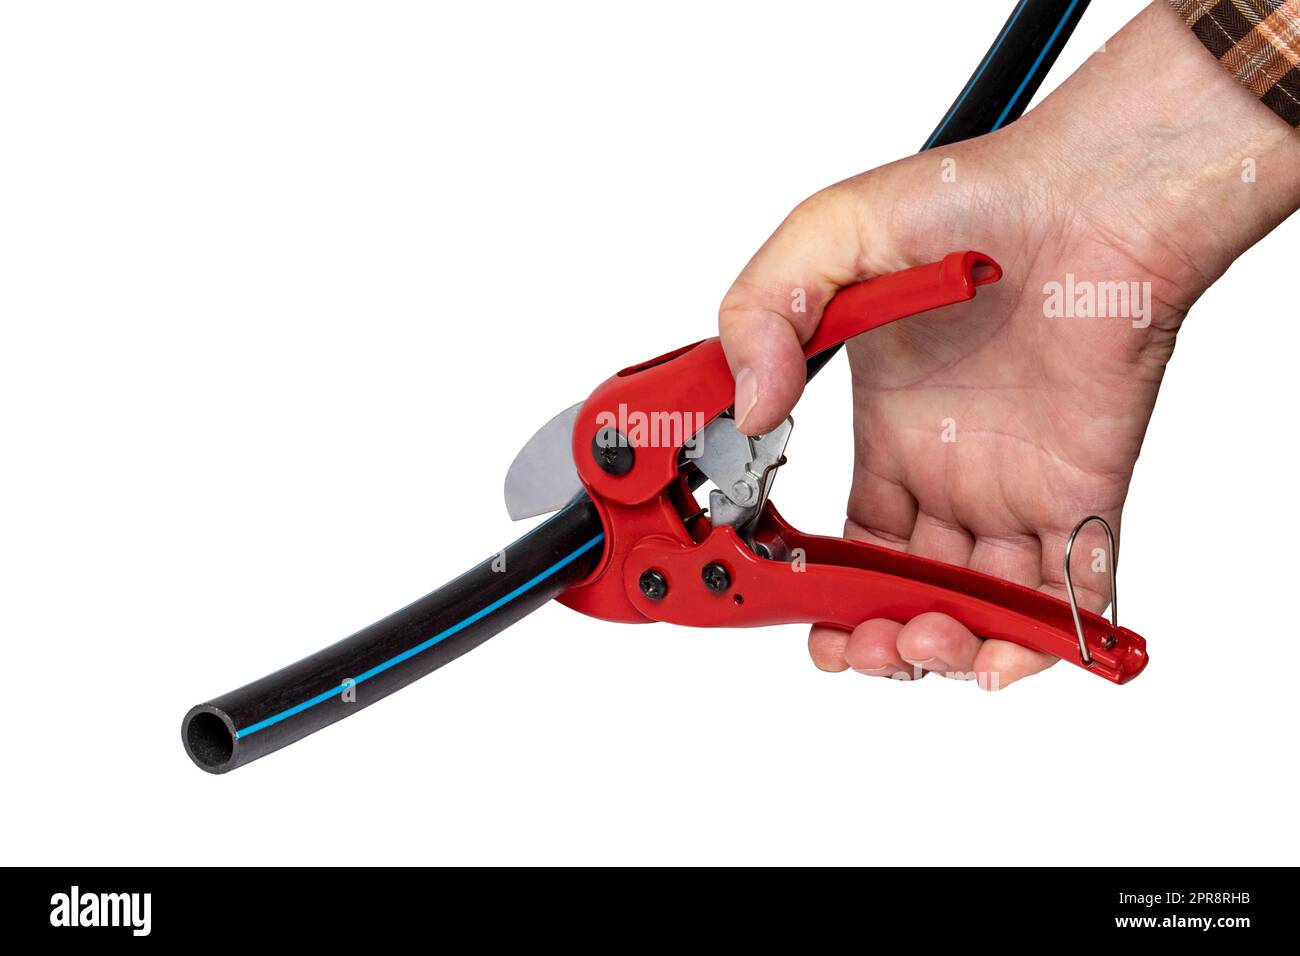 Klempnerwerkzeuge isoliert. Ein Mann schneidet ein Stück PE-Druckrohr oder Wasserrohr mit einem roten pvc-Rohrabschneider. Beschneidungspfad. Trink- und Versorgungswassersysteme. Stockfoto